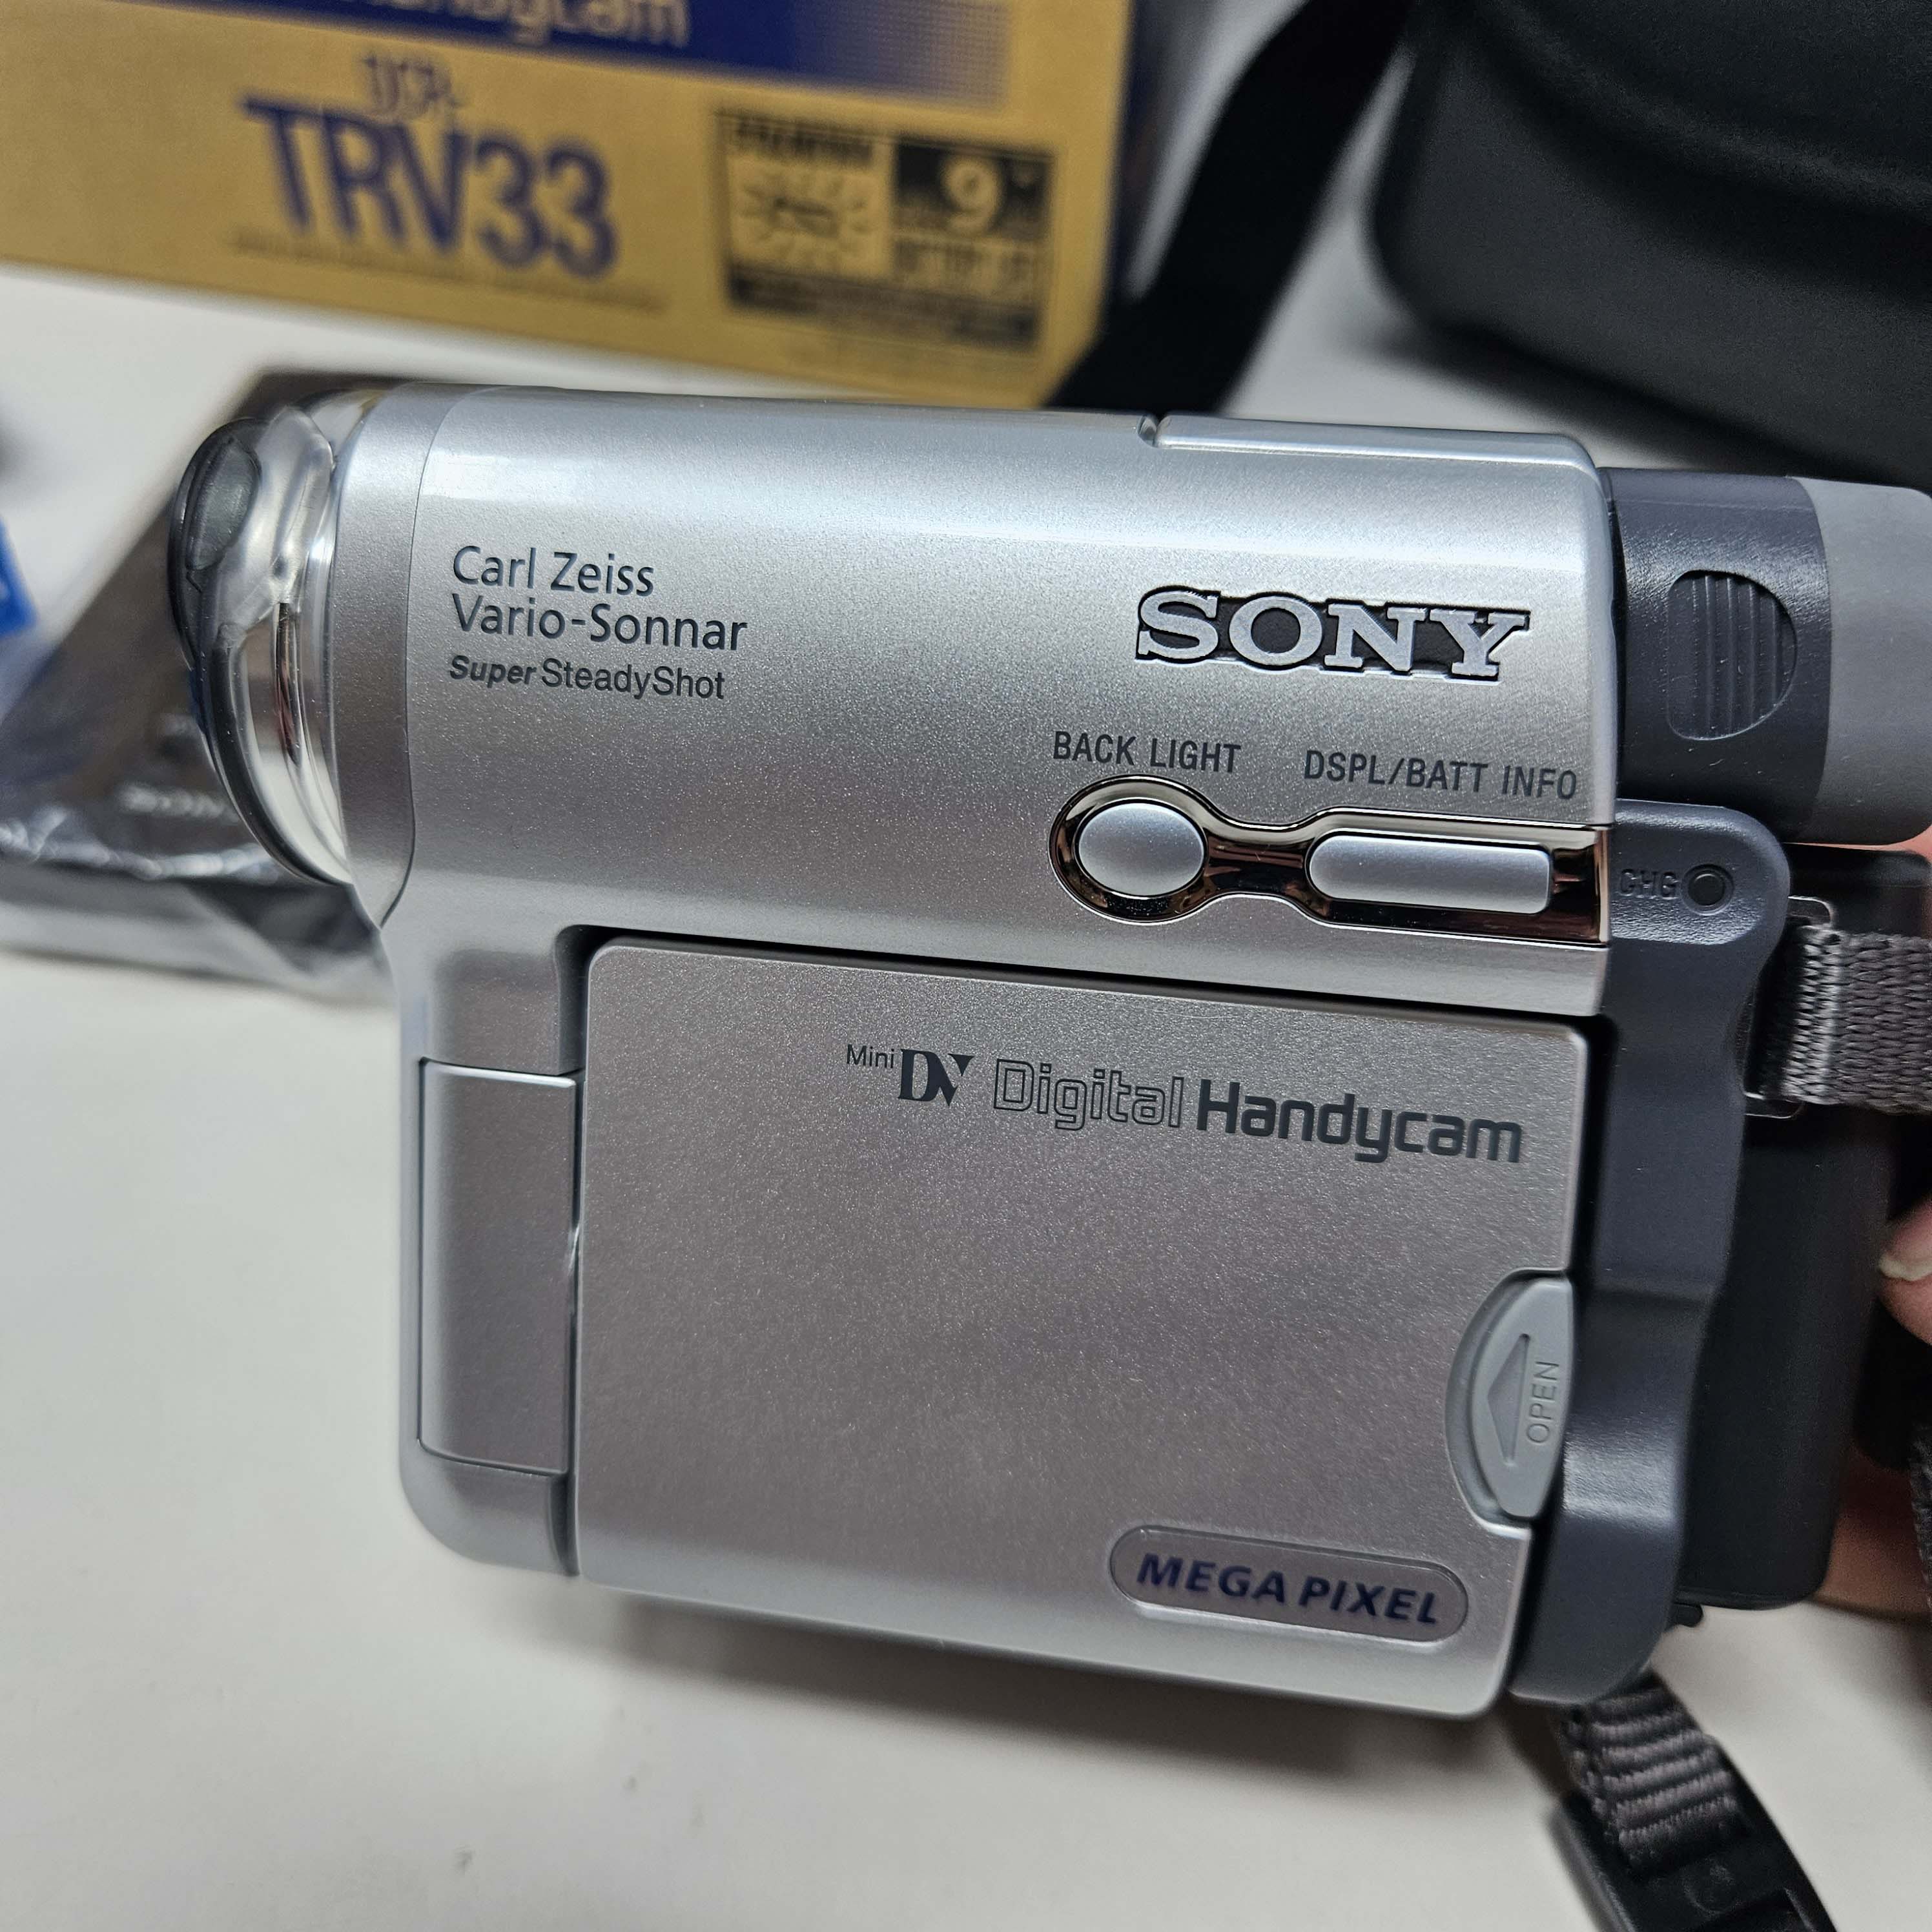 Sony Digital Handycam DCR-TRV33 Digital Video Camera